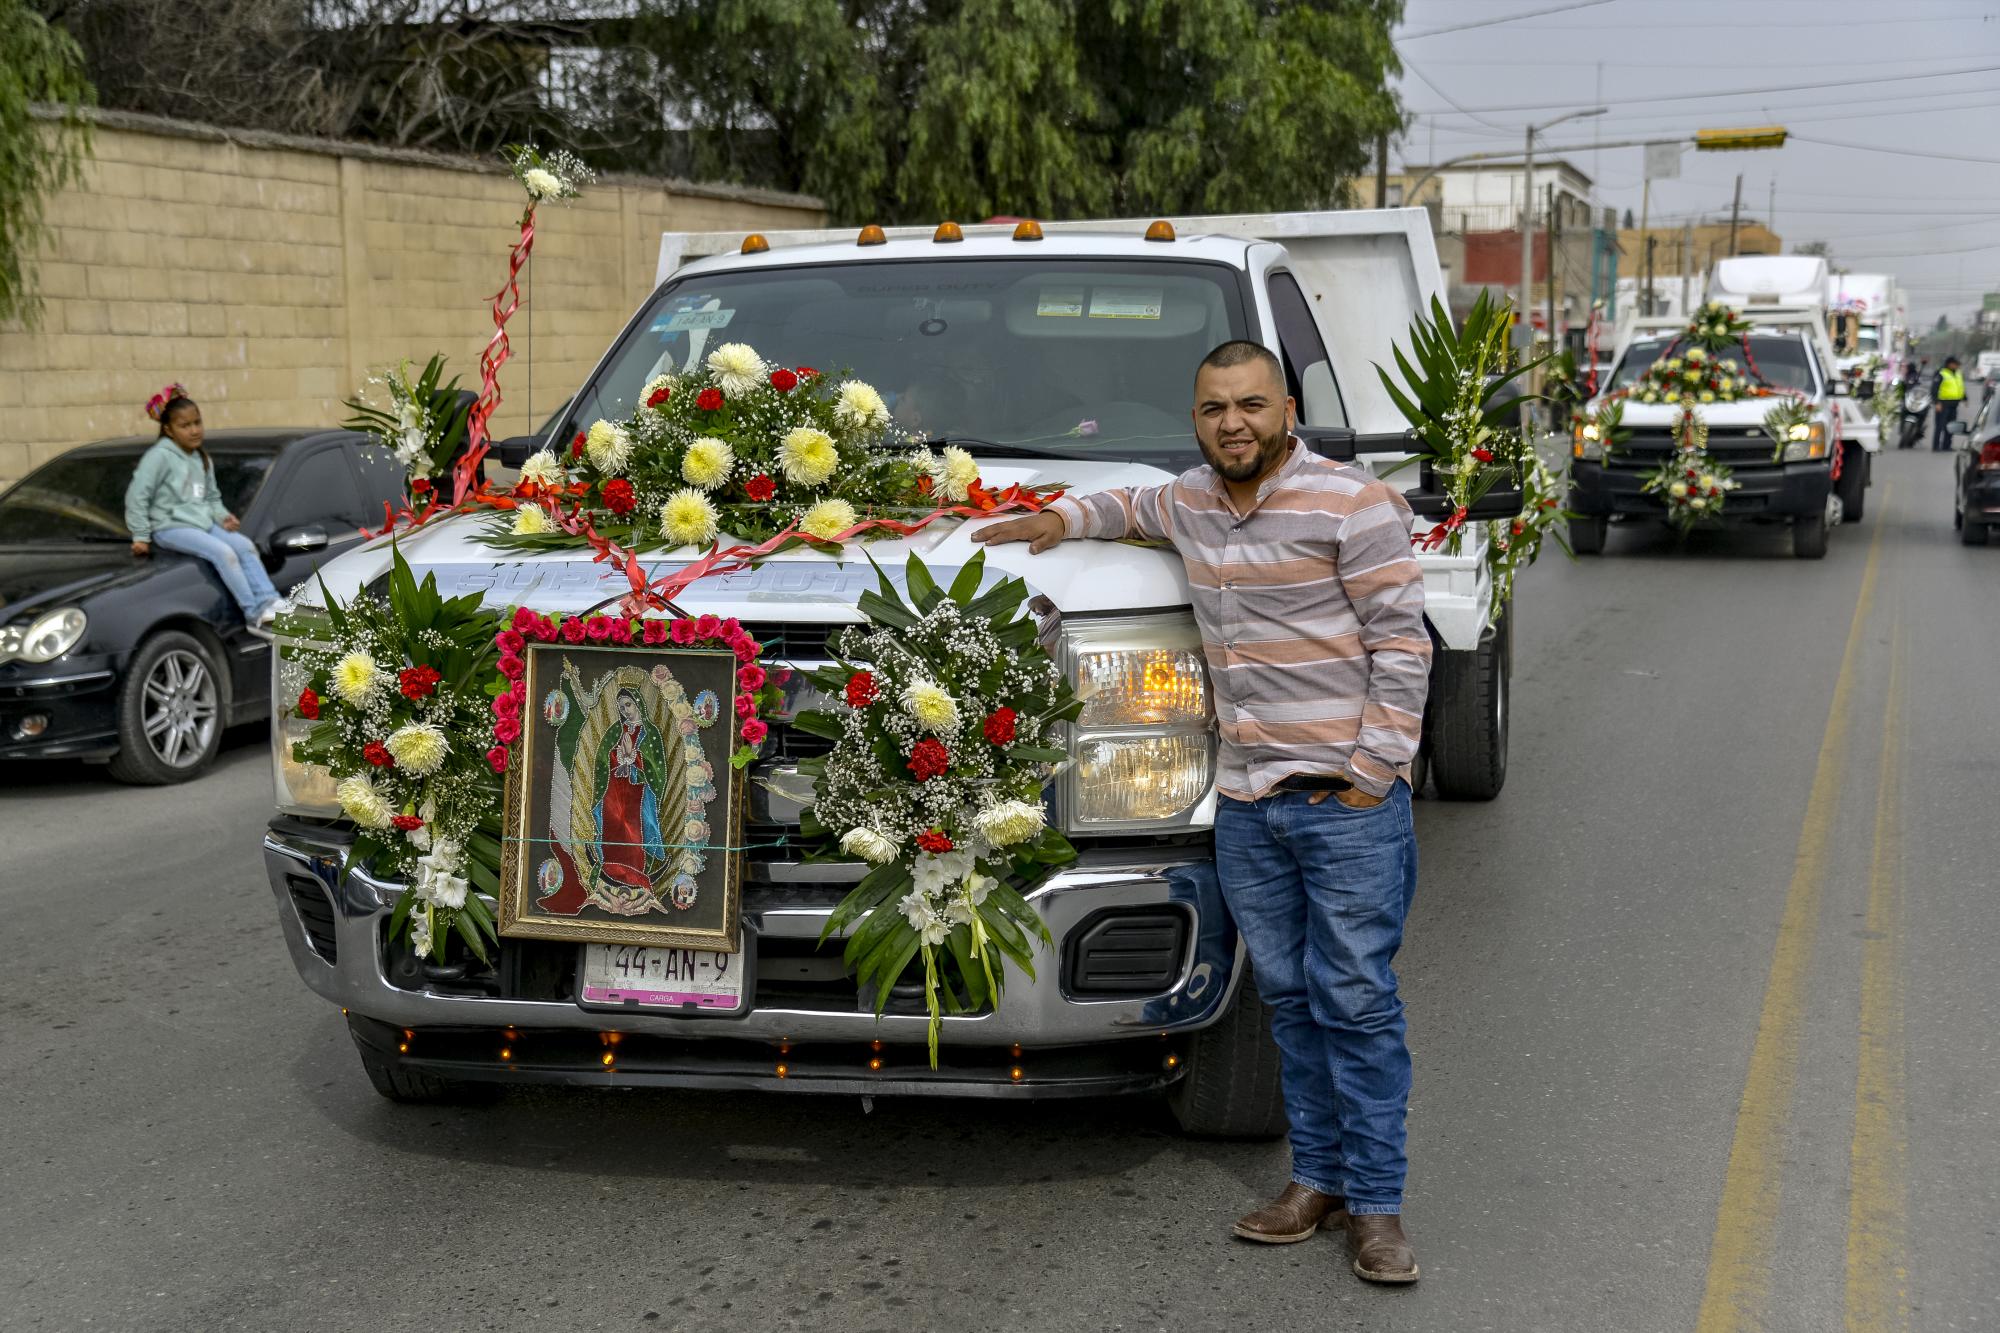 $!Los vehículos de la peregrinación se encuentran decorados con flores y lonas, rindiendo homenaje a la Virgen Morena y a seres queridos fallecidos.